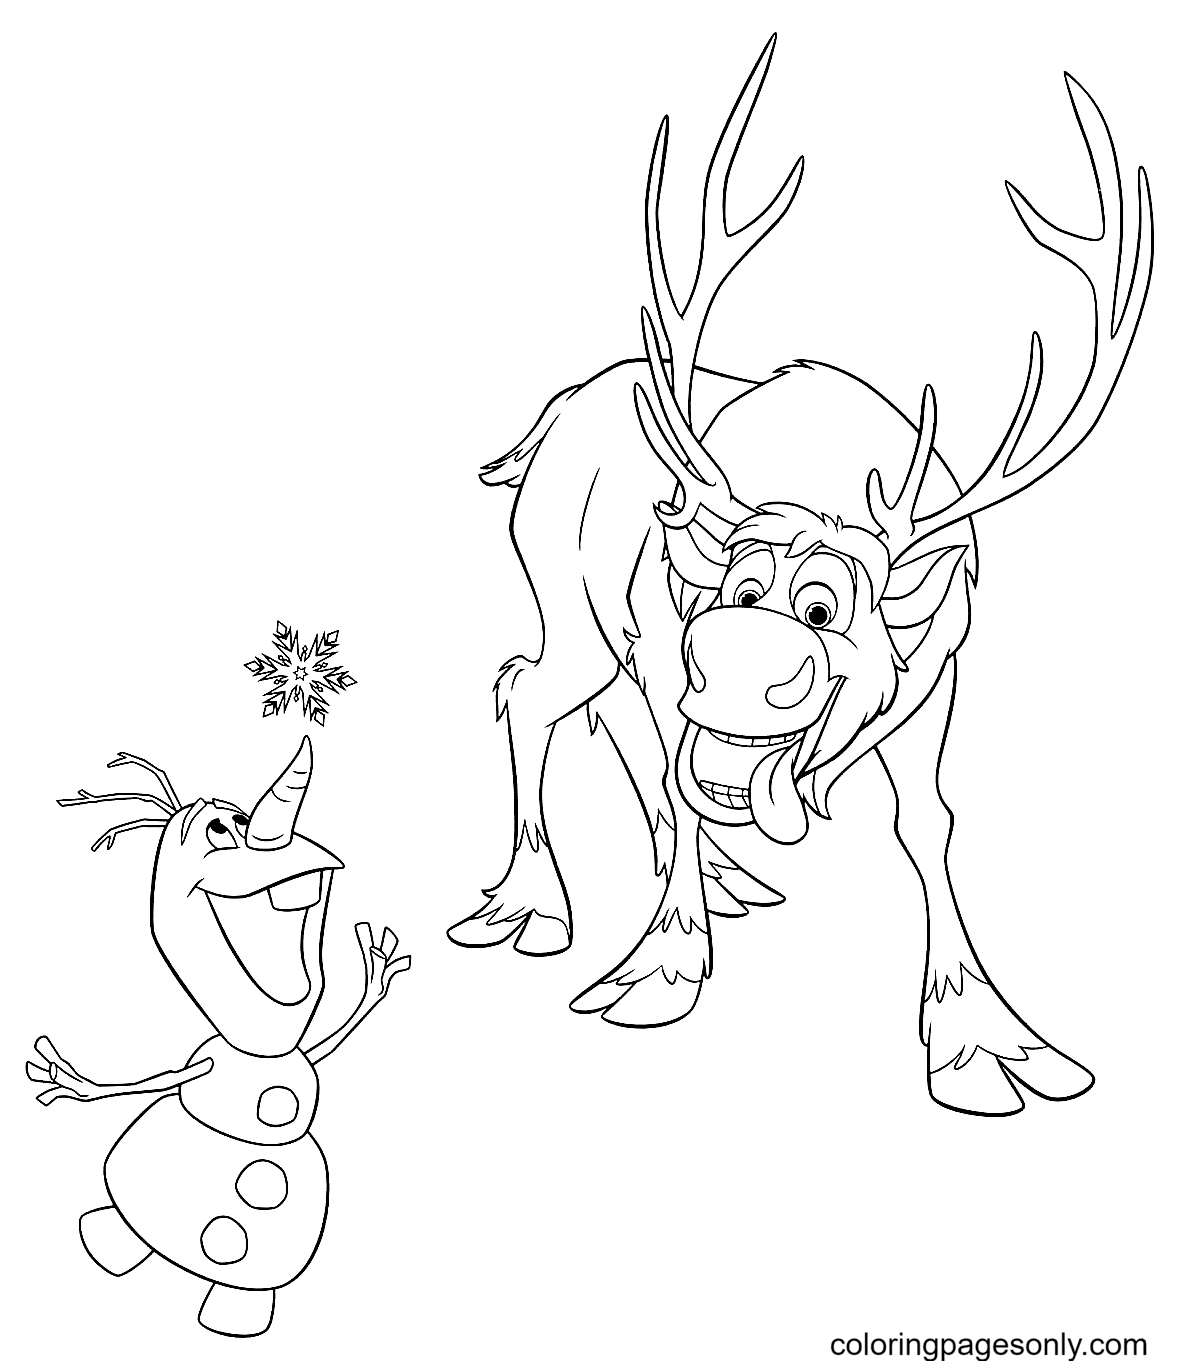 Sven und Olaf fangen Schneeflocken von Olaf